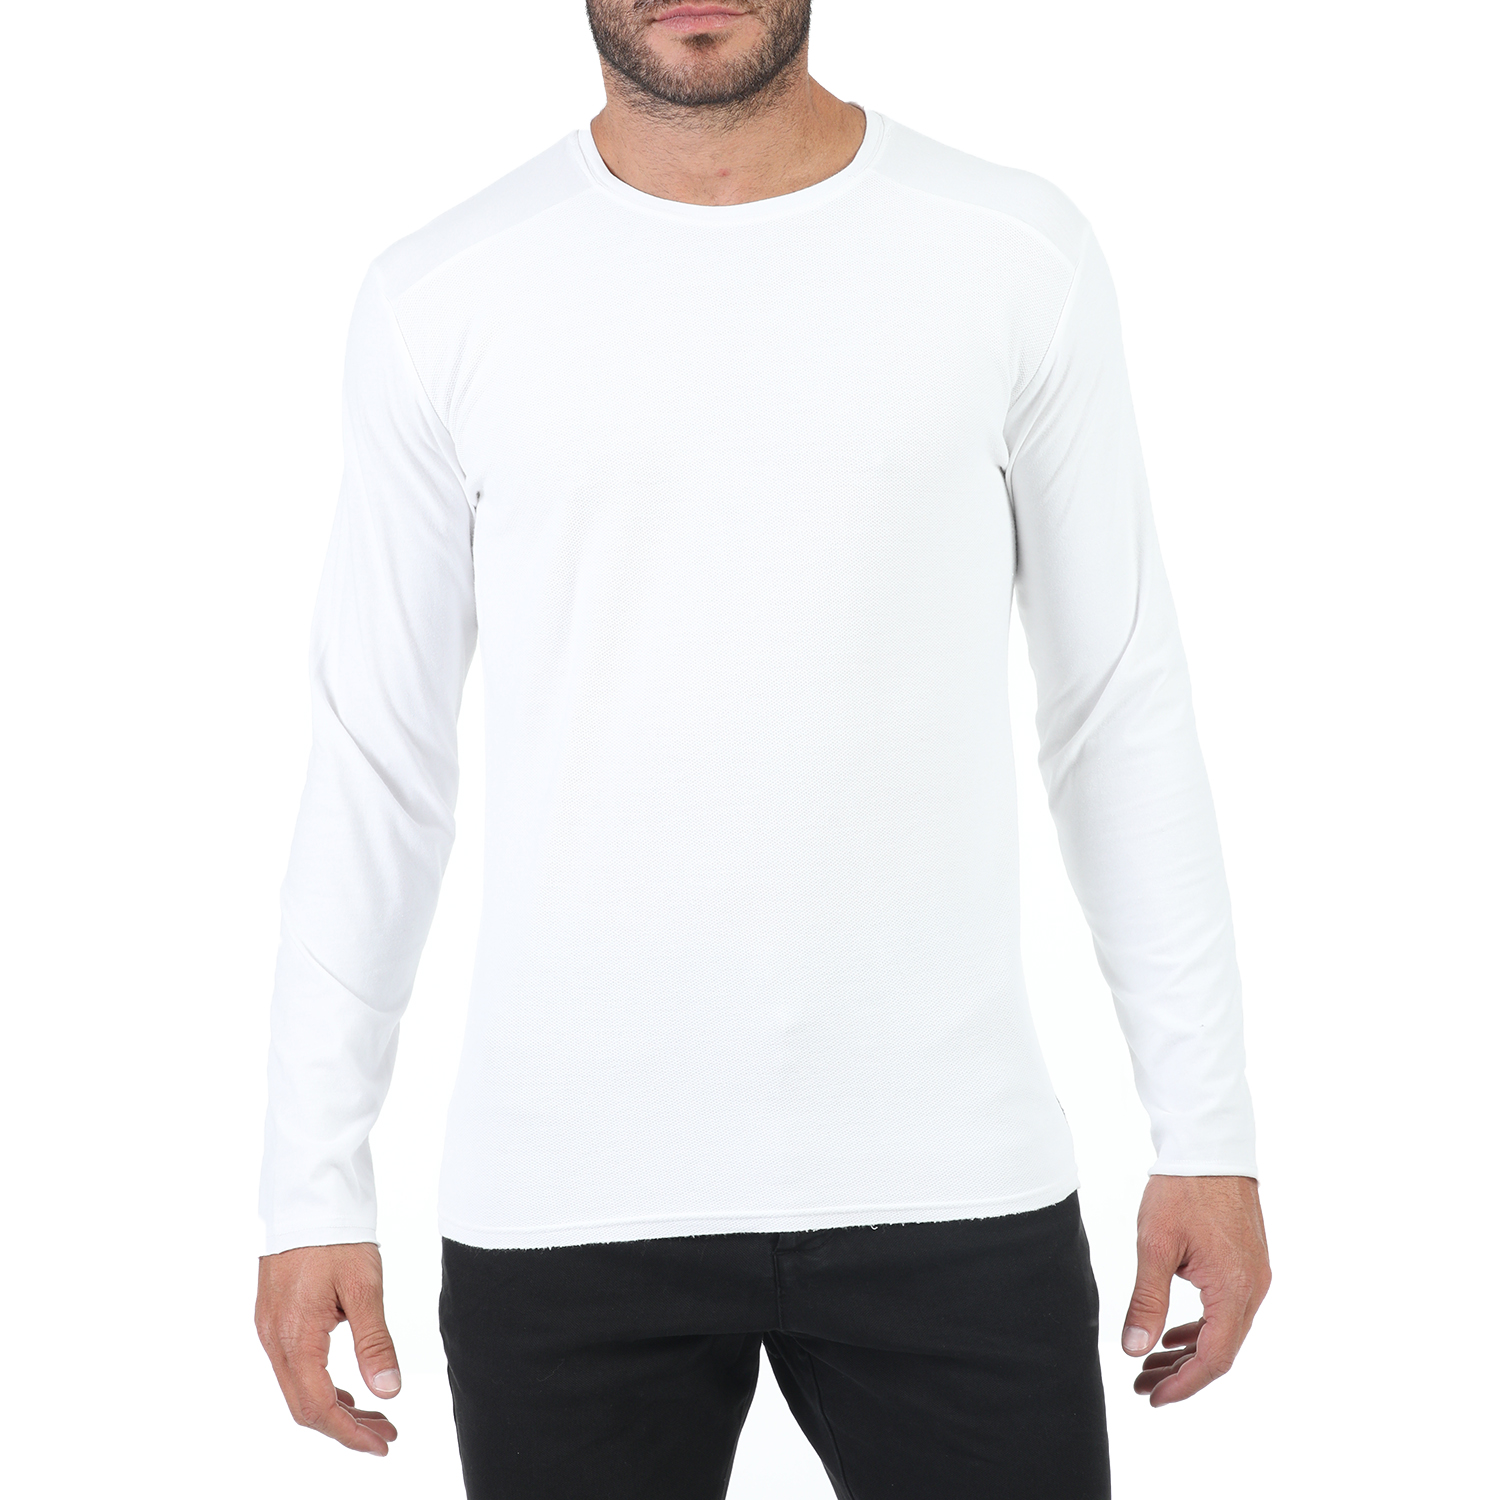 Ανδρικά/Ρούχα/Μπλούζες/Μακρυμάνικες DIRTY LAUNDRY - Ανδρική μακρυμάνικη μπλούζα DIRTY LAUNDRY λευκή